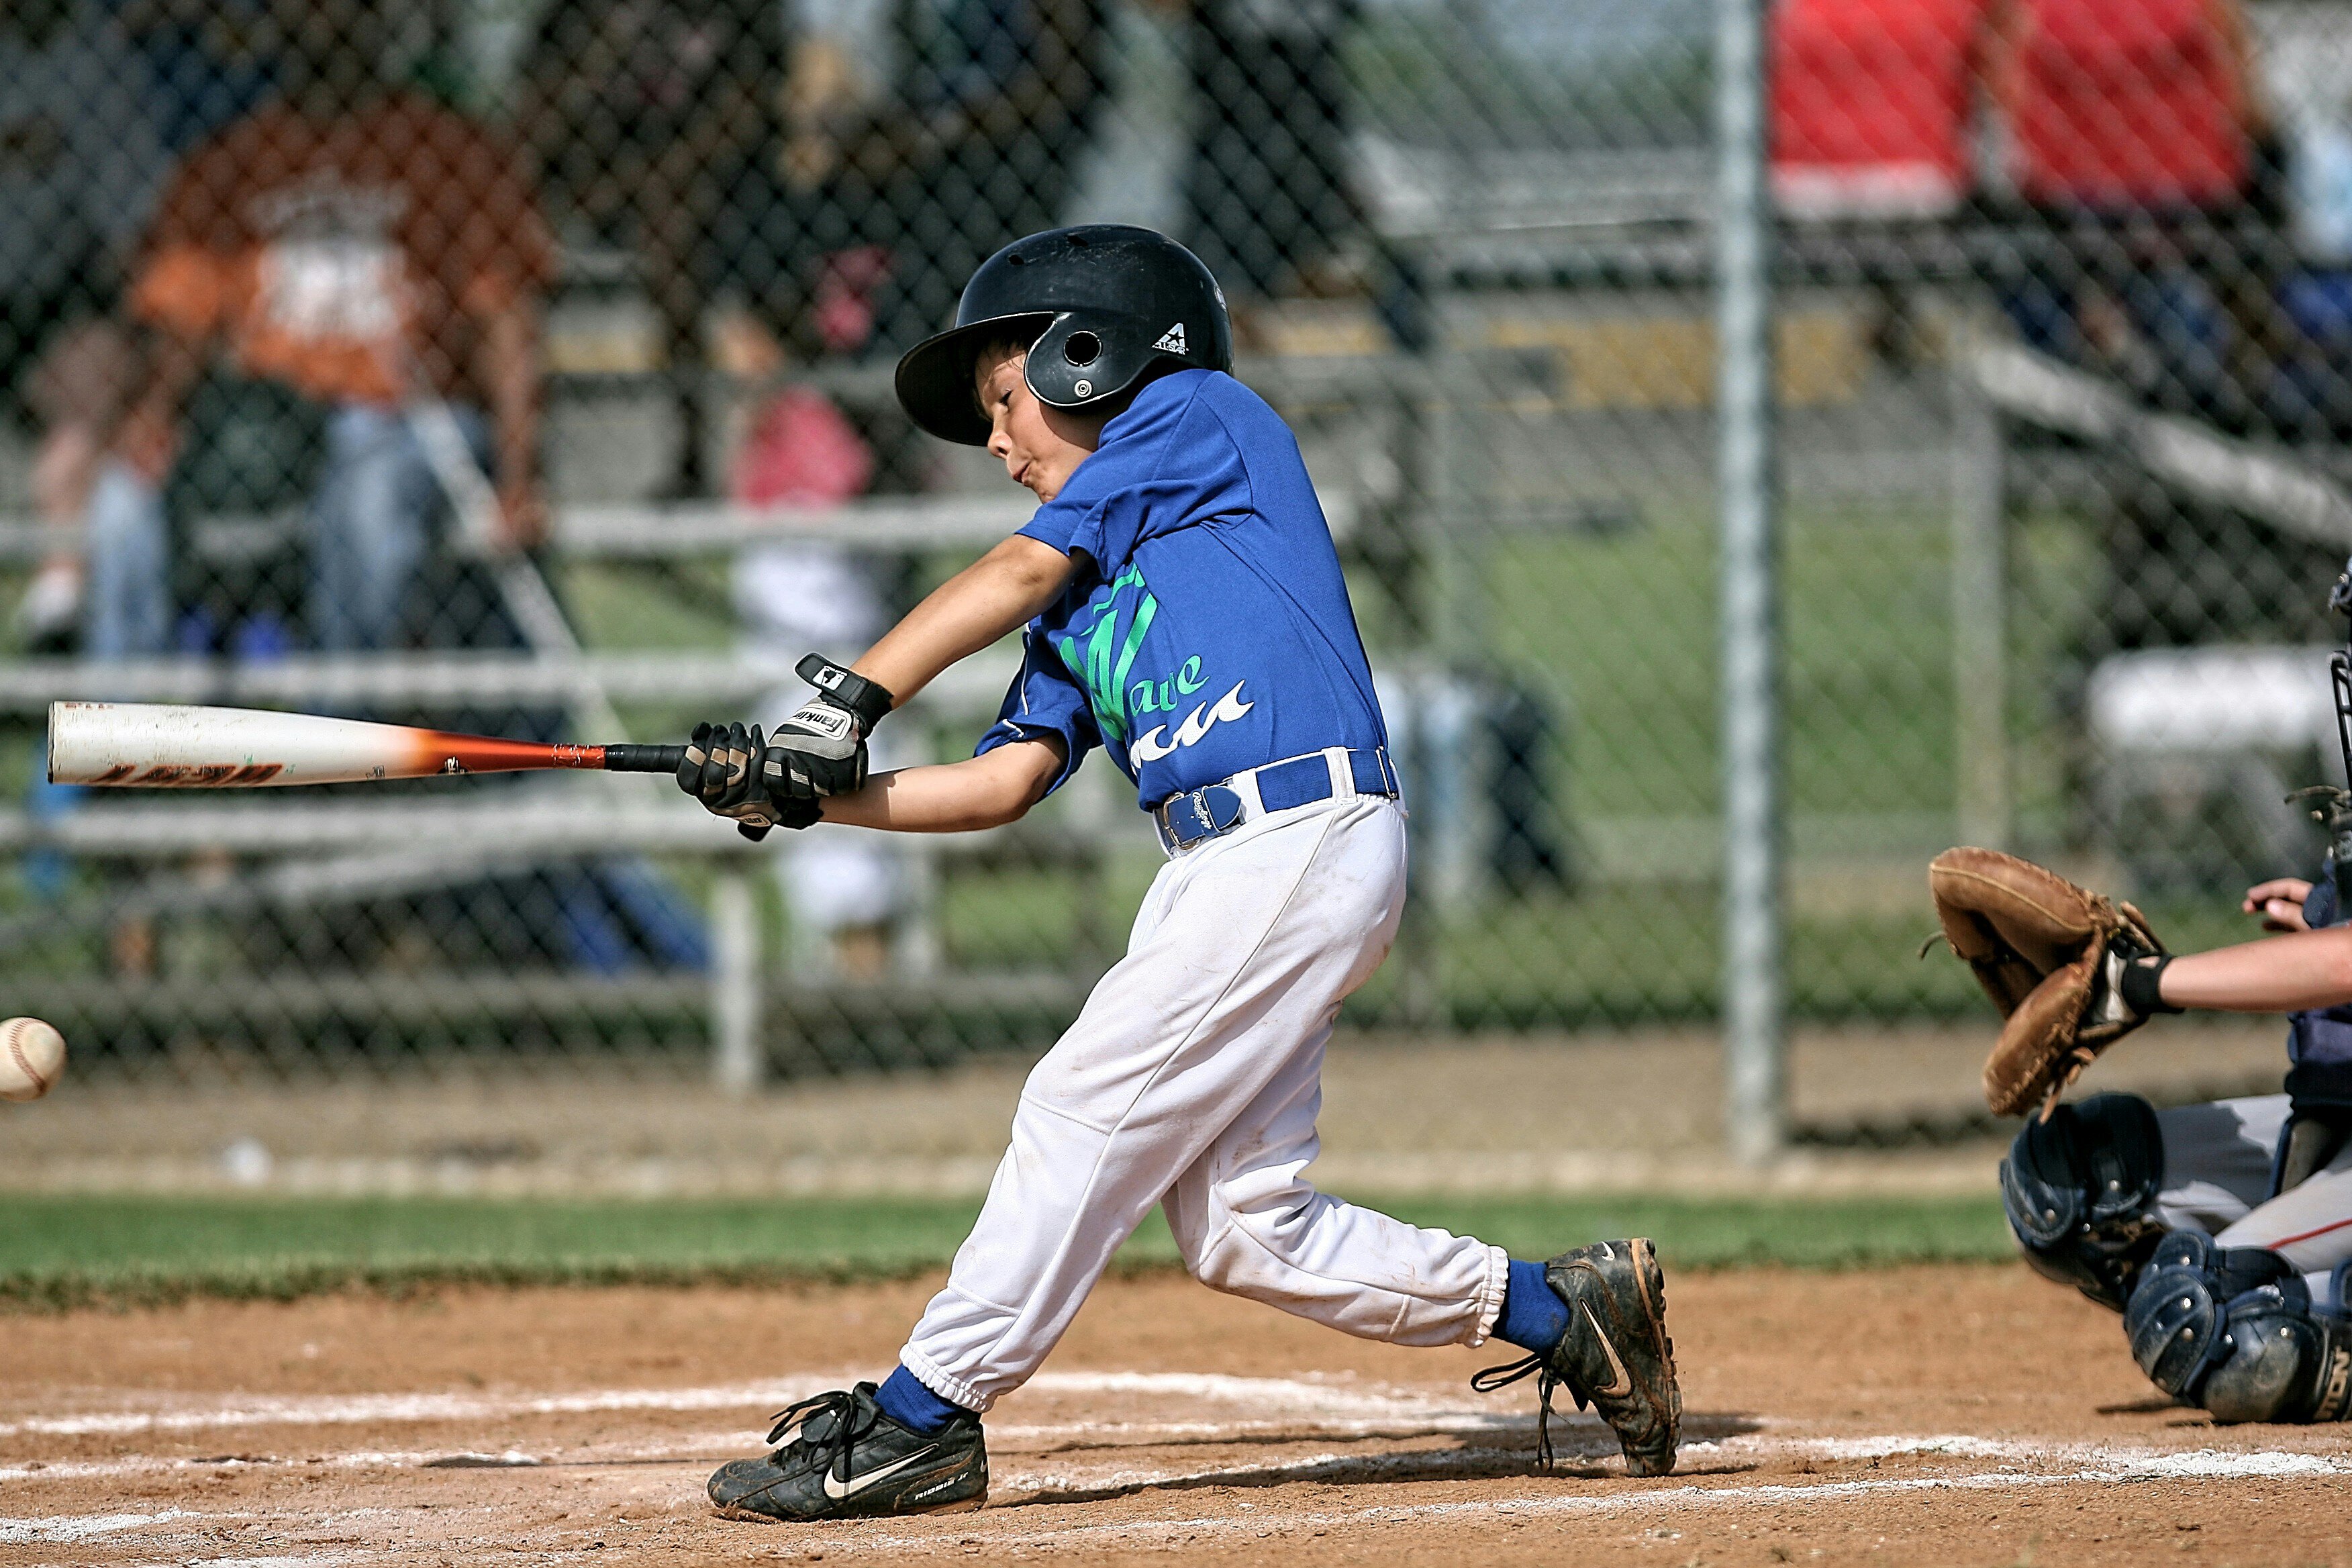 youth baseball player swinging a baseball bat